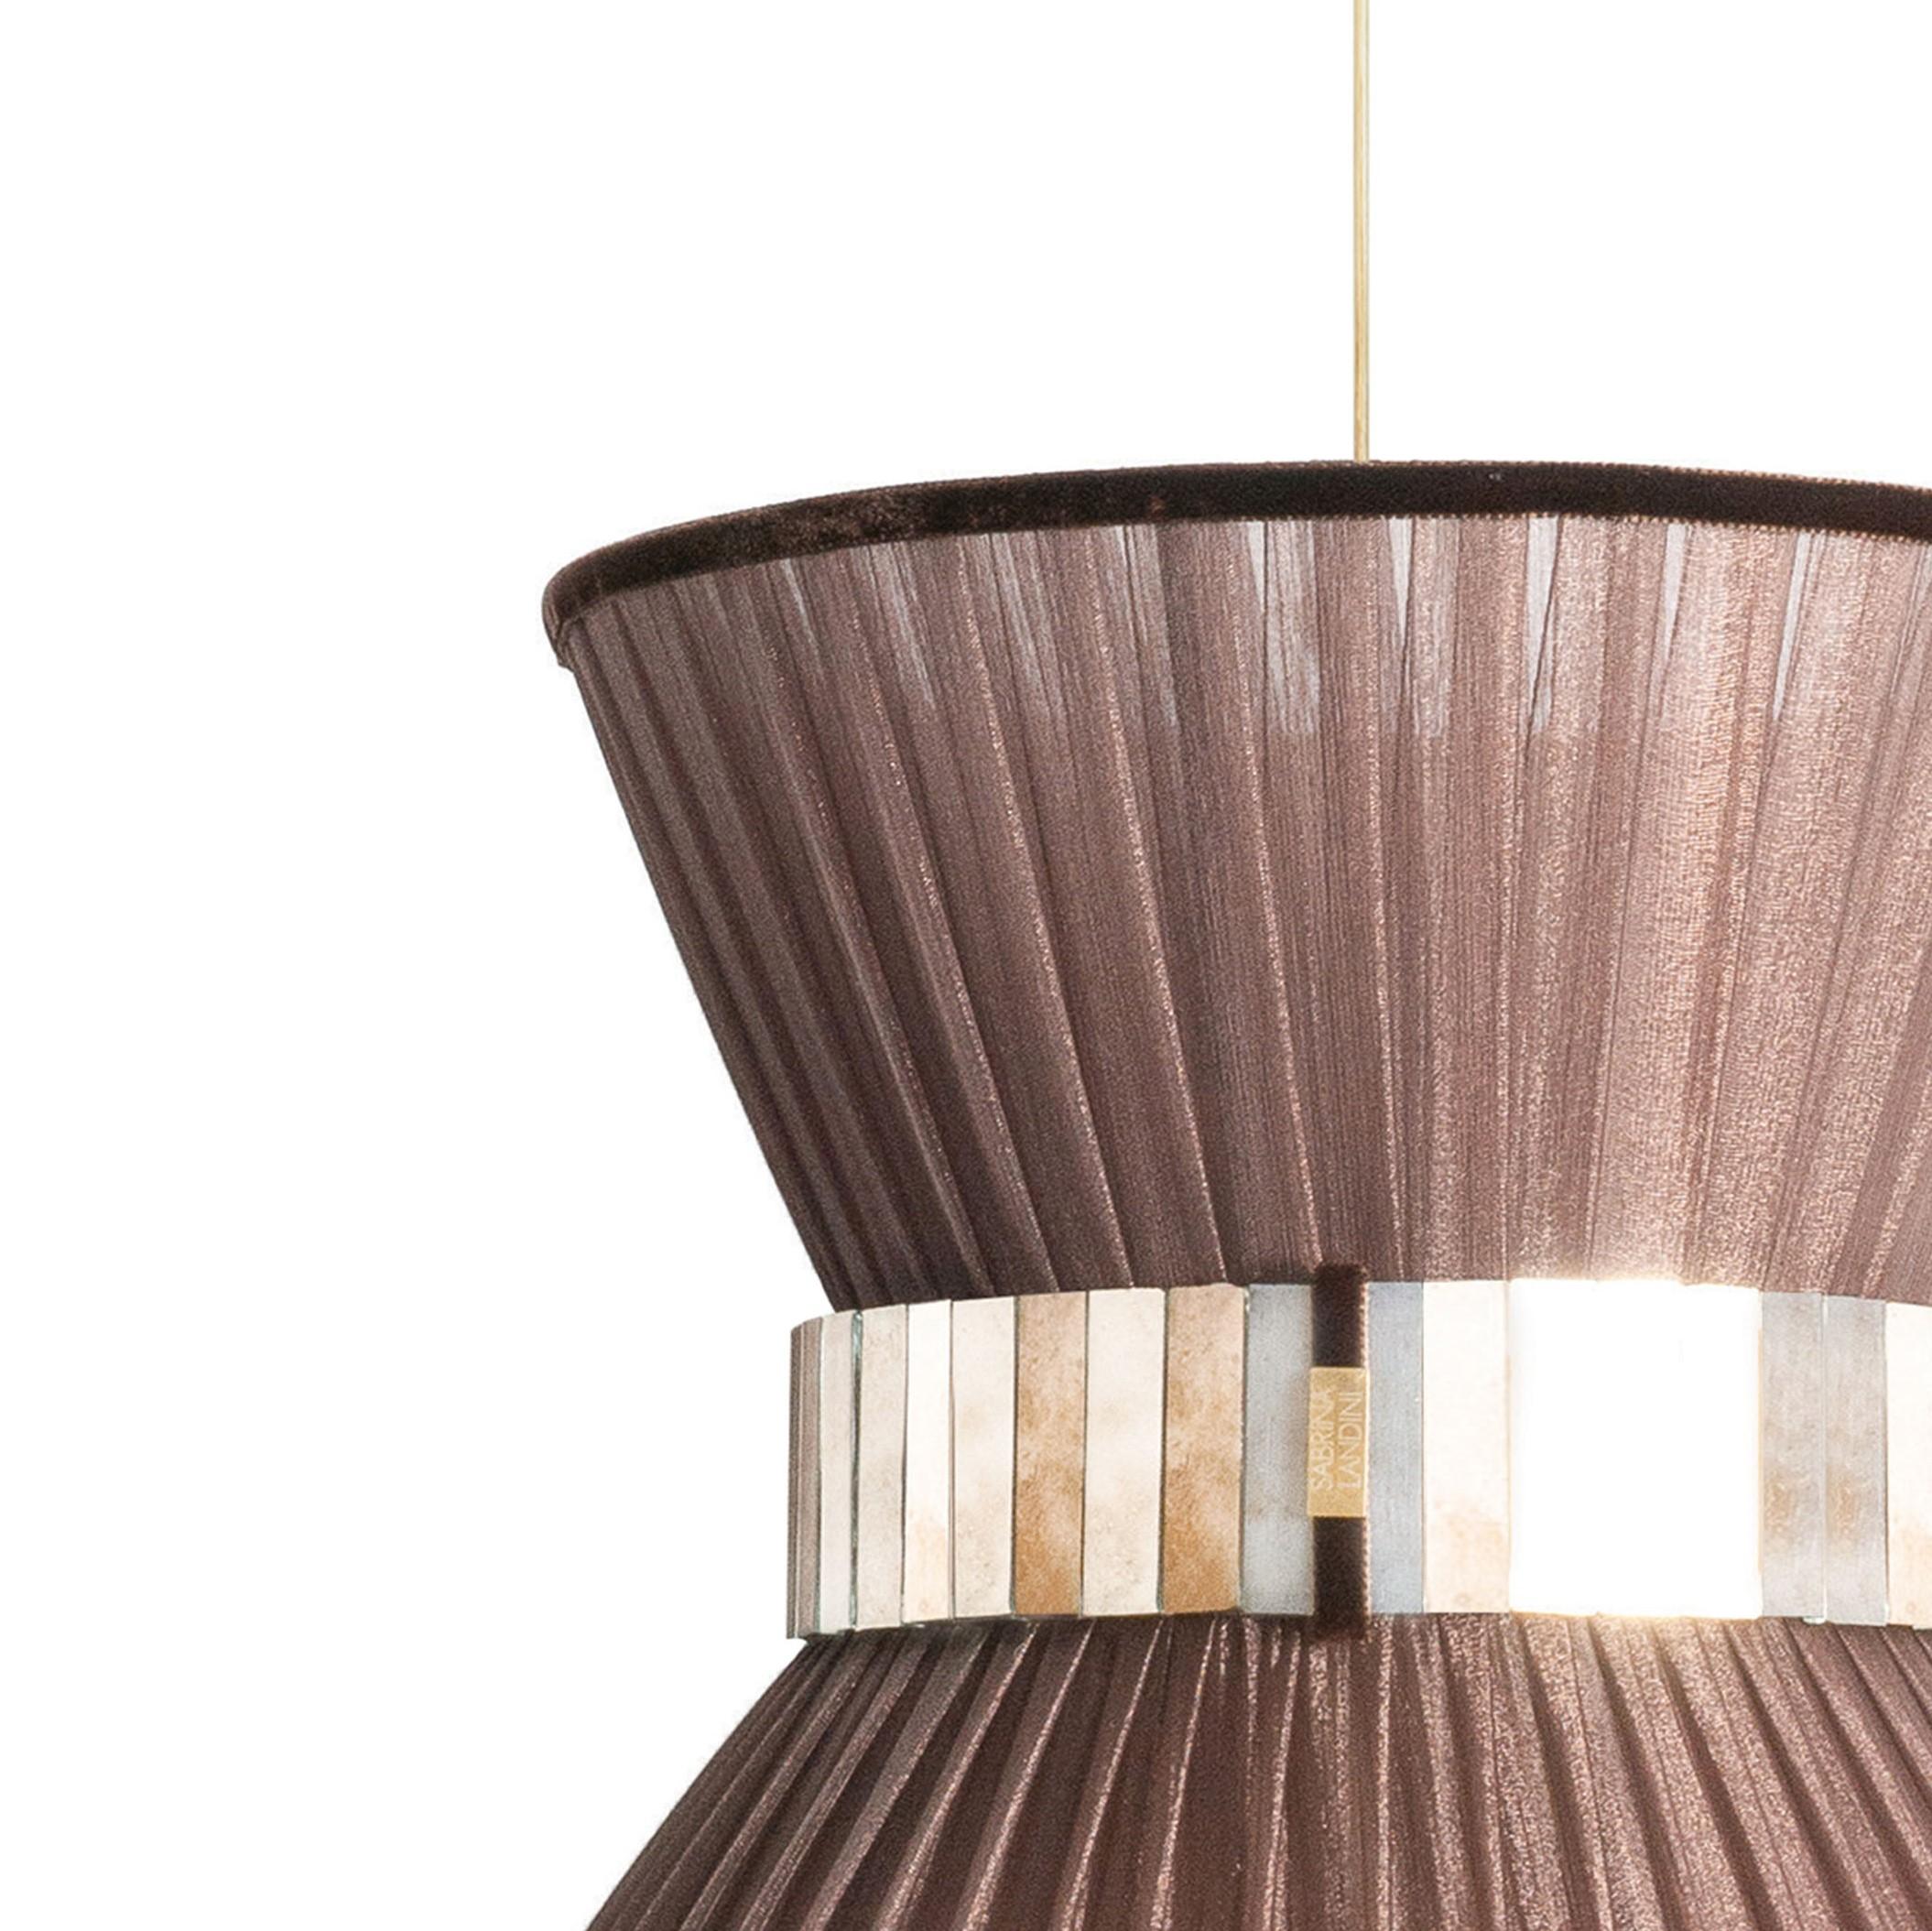 TIFFANY die kultige Lampe!

Seit 20 Jahren haben wir unsere einzigartige Herstellungsmethode beibehalten. Inspiriert von den unbegrenzten Spiegelungen im Glas hat Sabrina Landini eine elegante Wohnkollektion entworfen.
Falls Sie sich in der Toskana